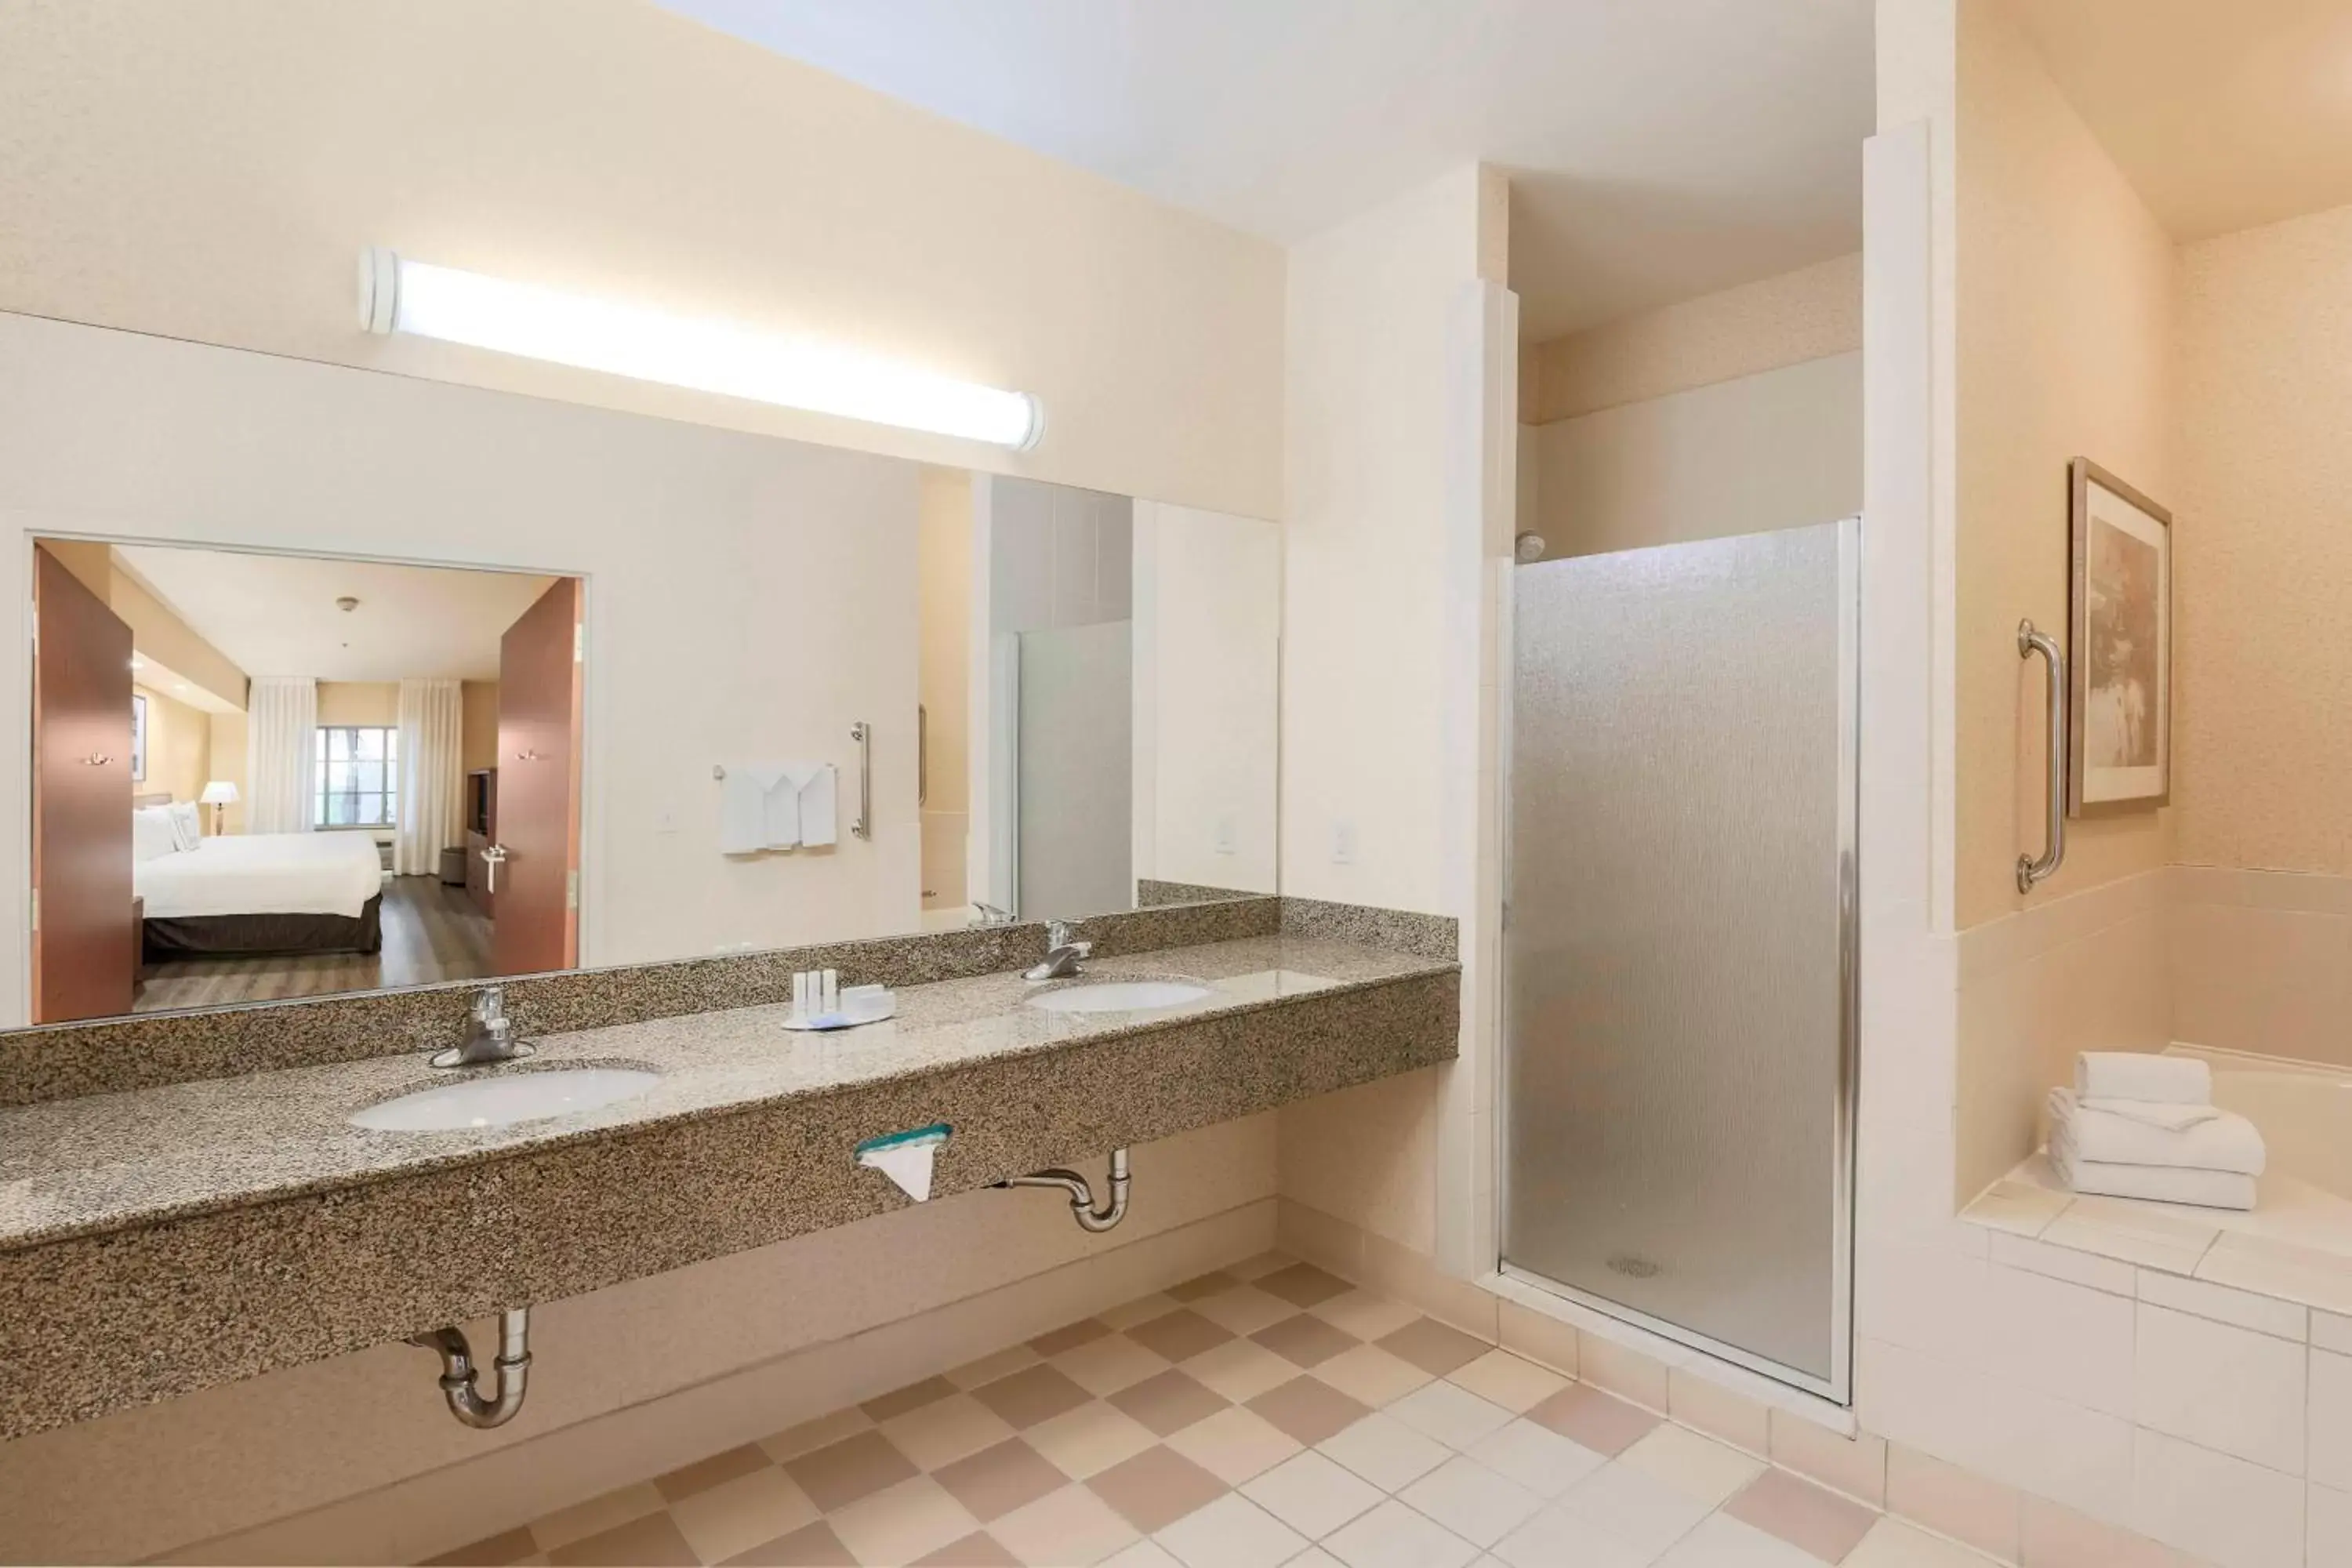 Bathroom in Fairfield Inn & Suites Temecula